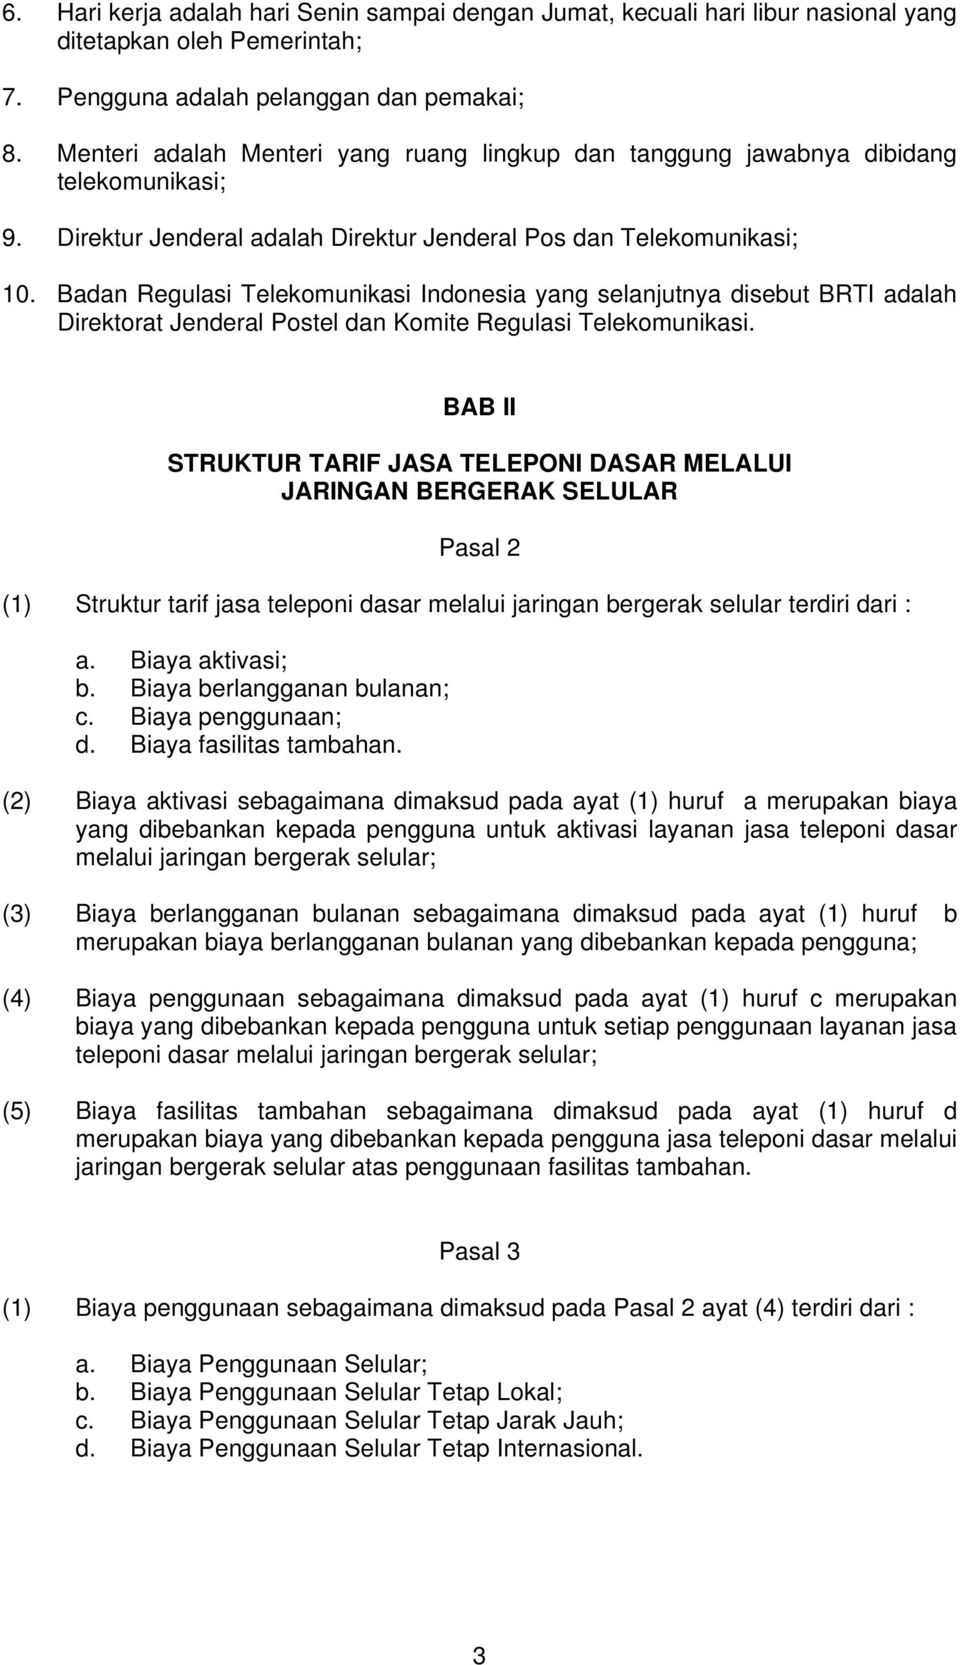 Badan Regulasi Telekomunikasi Indonesia yang selanjutnya disebut BRTI adalah Direktorat Jenderal Postel dan Komite Regulasi Telekomunikasi.